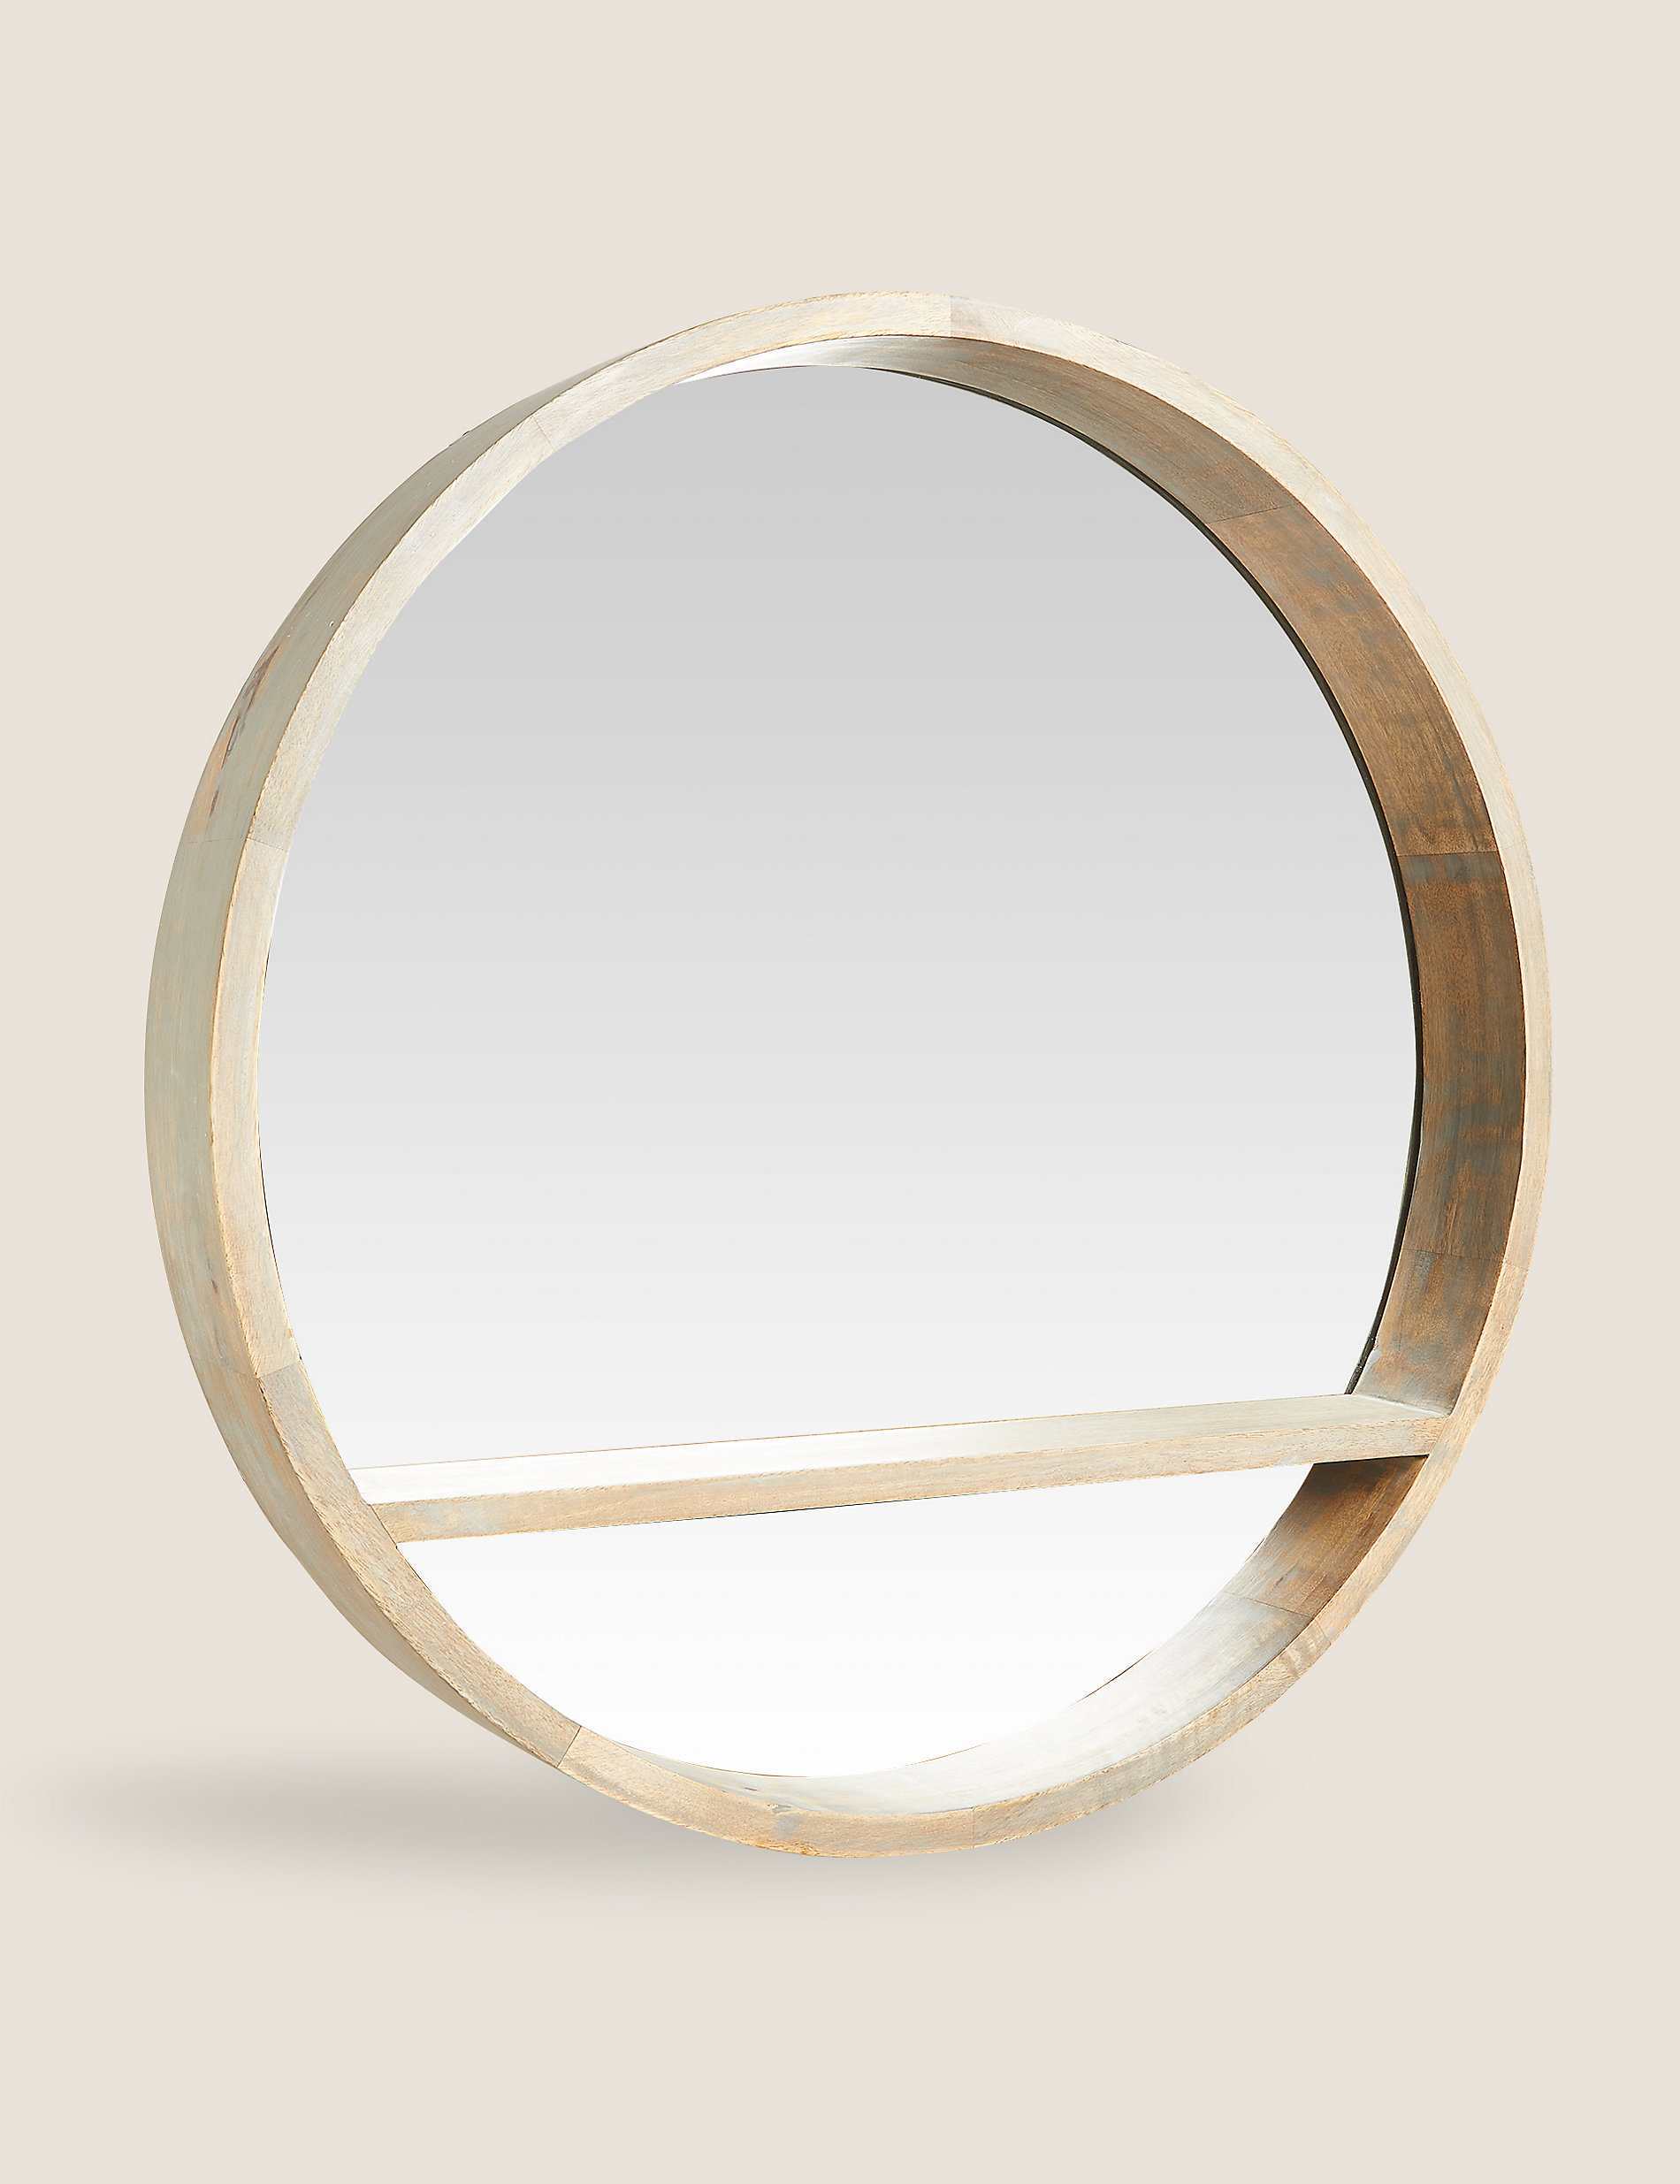 Wooden Round Mirror with Shelf